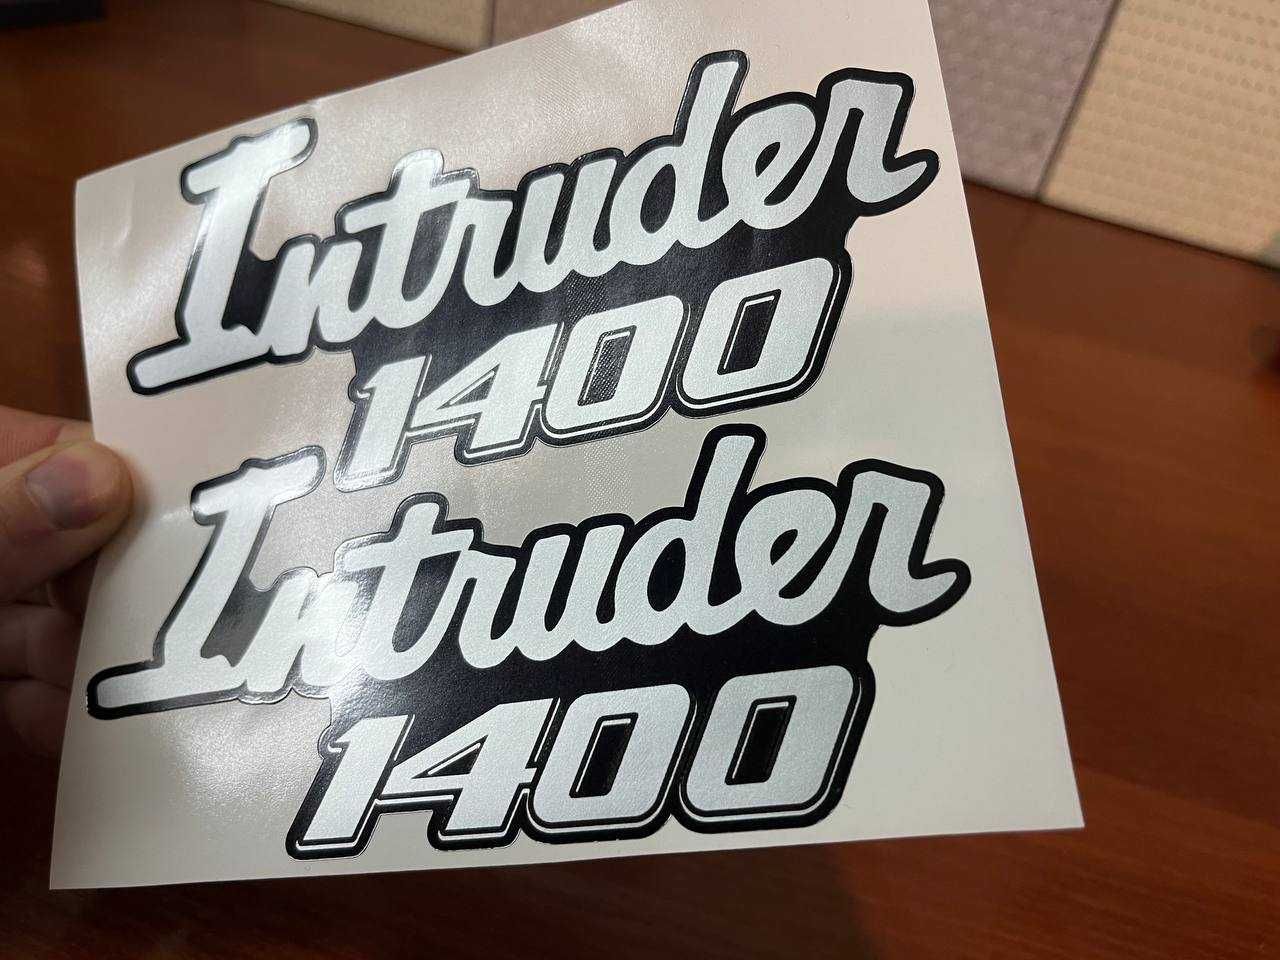 Intruder 1400 (комплект 2 шт) наклейки на бак пластик мото